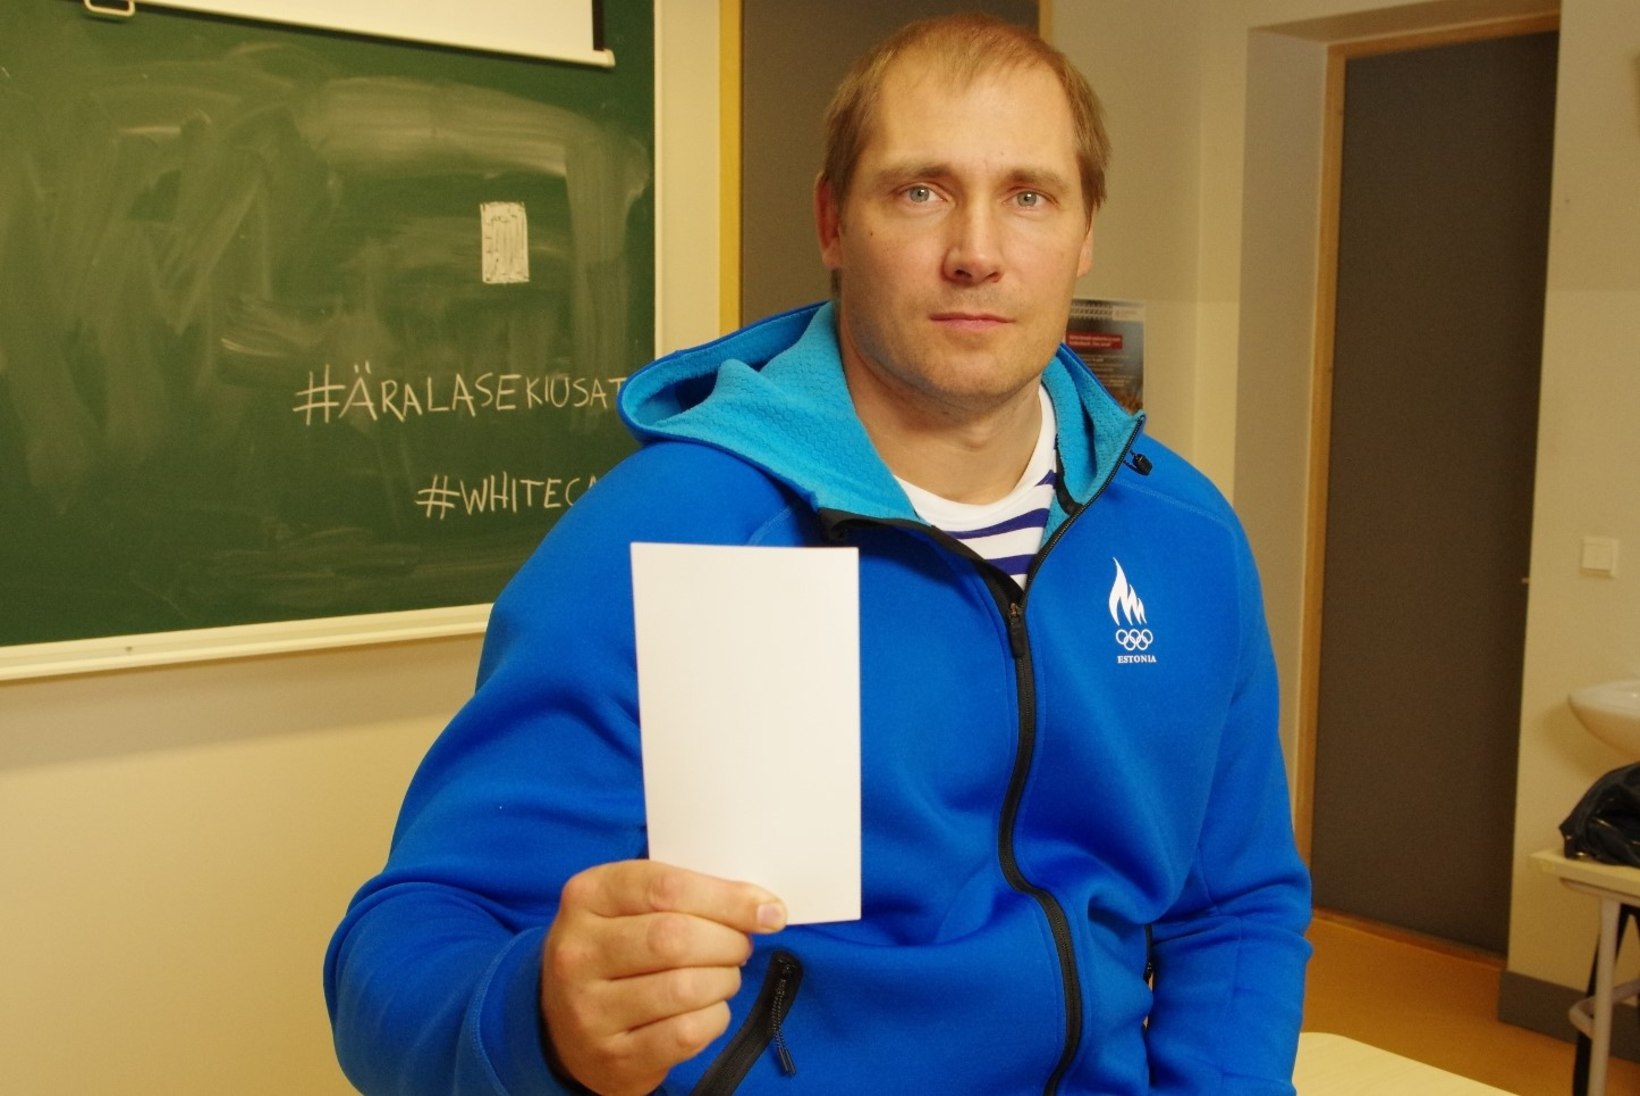 Eesti sportlased astusid valge kaardiga koolikiusamise vastu